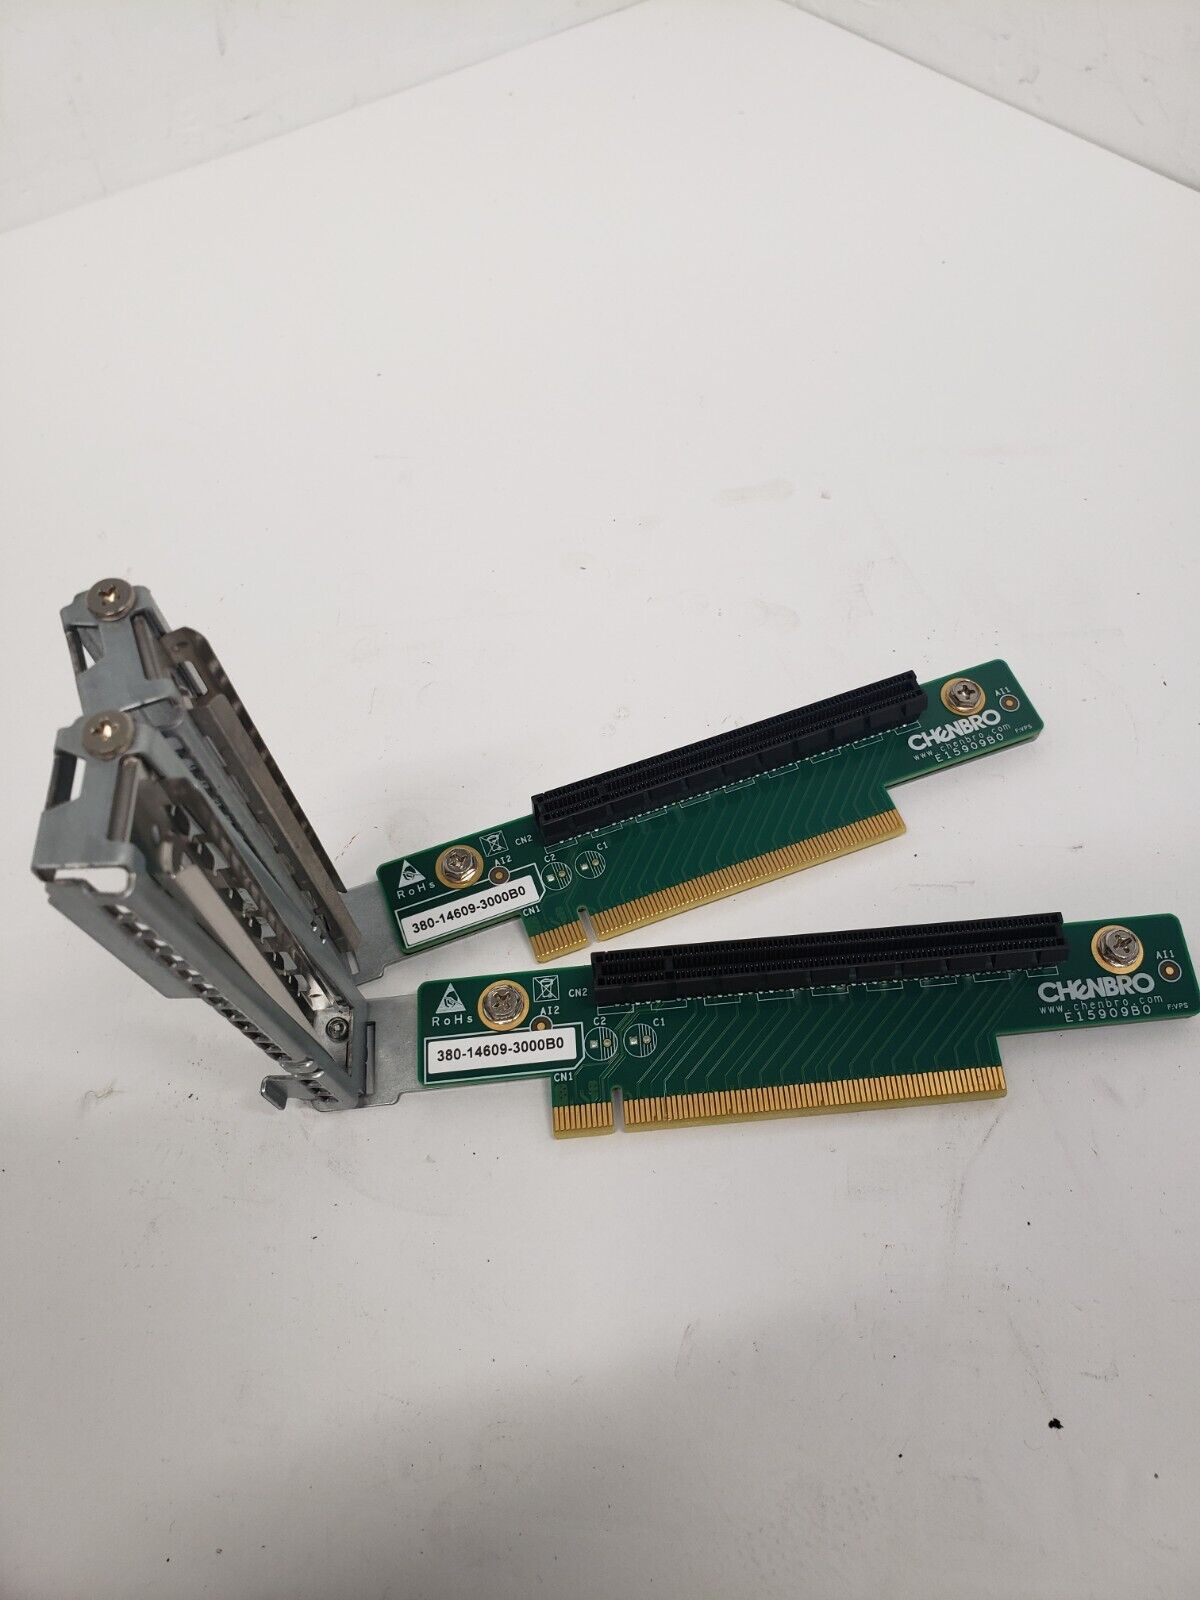 LOT OF 2 Chenbro PCIe x16 Riser Card P/N: 380-14609-3000B0 / E15909B0